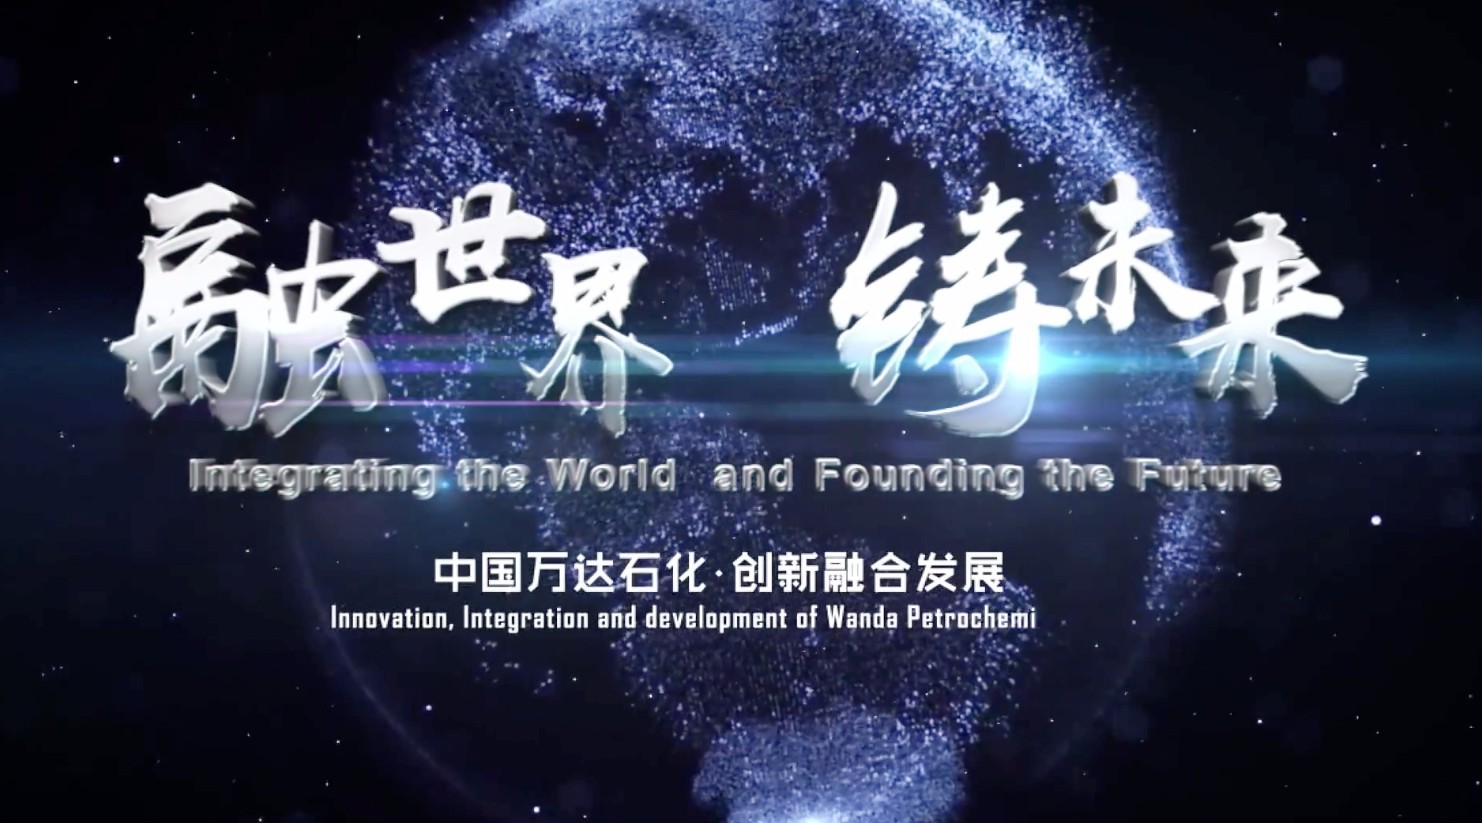 融世界 铸未来-中国万达石化集团形象片